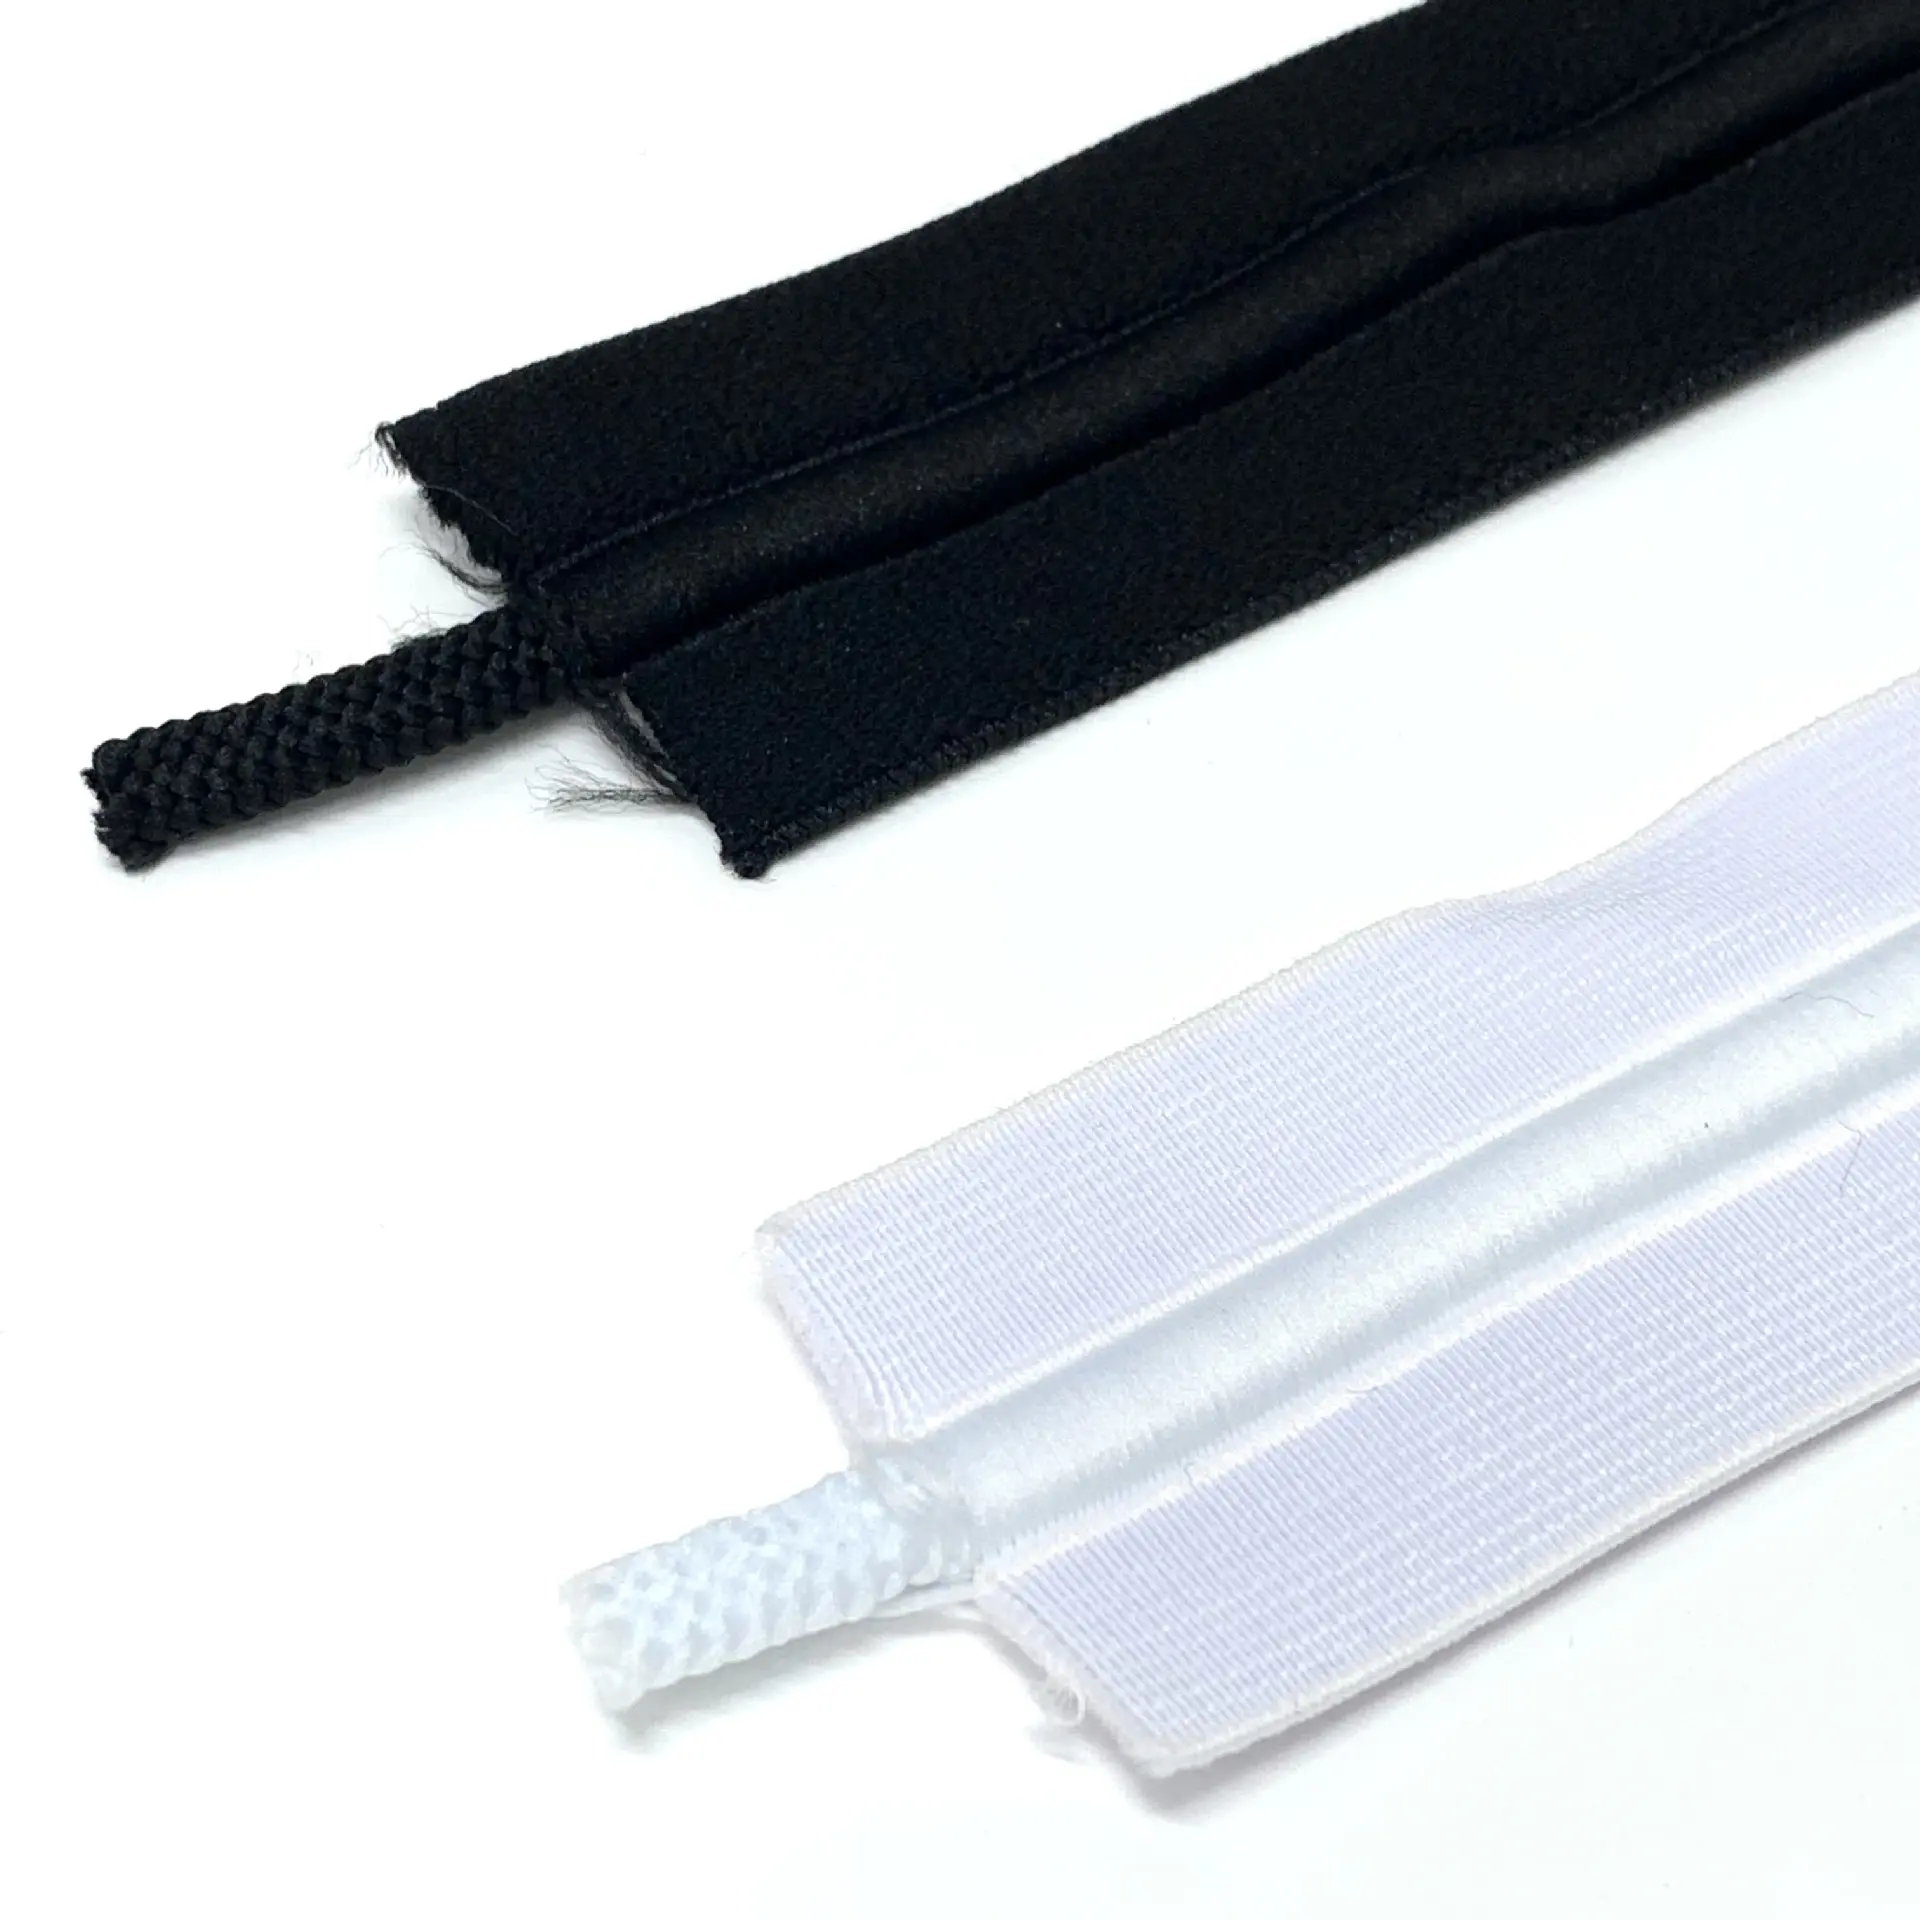 Großhandel Zugband Elastisches Band 1,5 Zoll breites Zugband elastisch für Taillenband